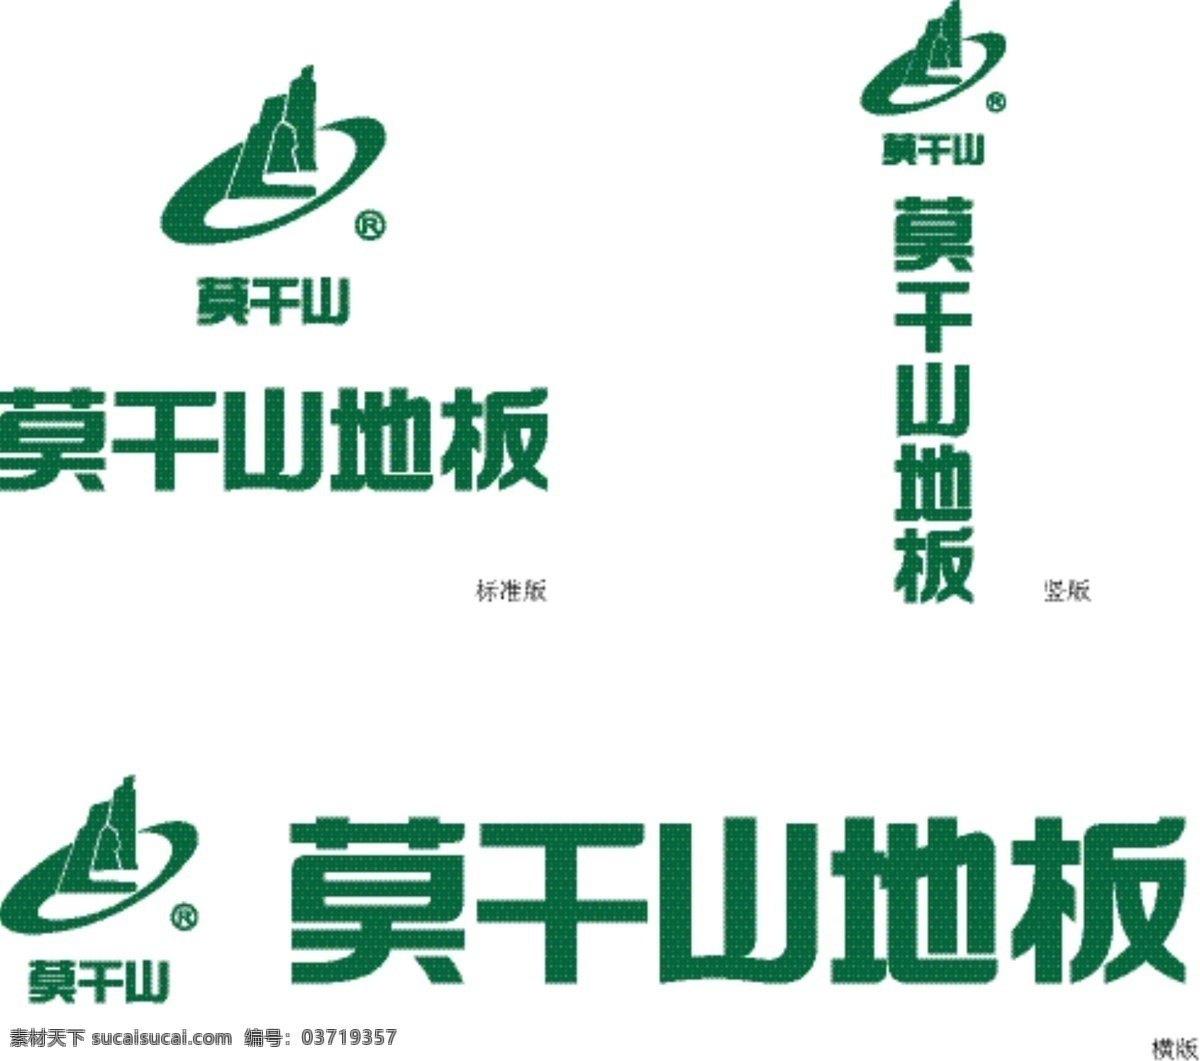 莫干山 地板 logo 莫干山地板 木地板 地板宣传图 木地板海报 标志图标 企业 标志